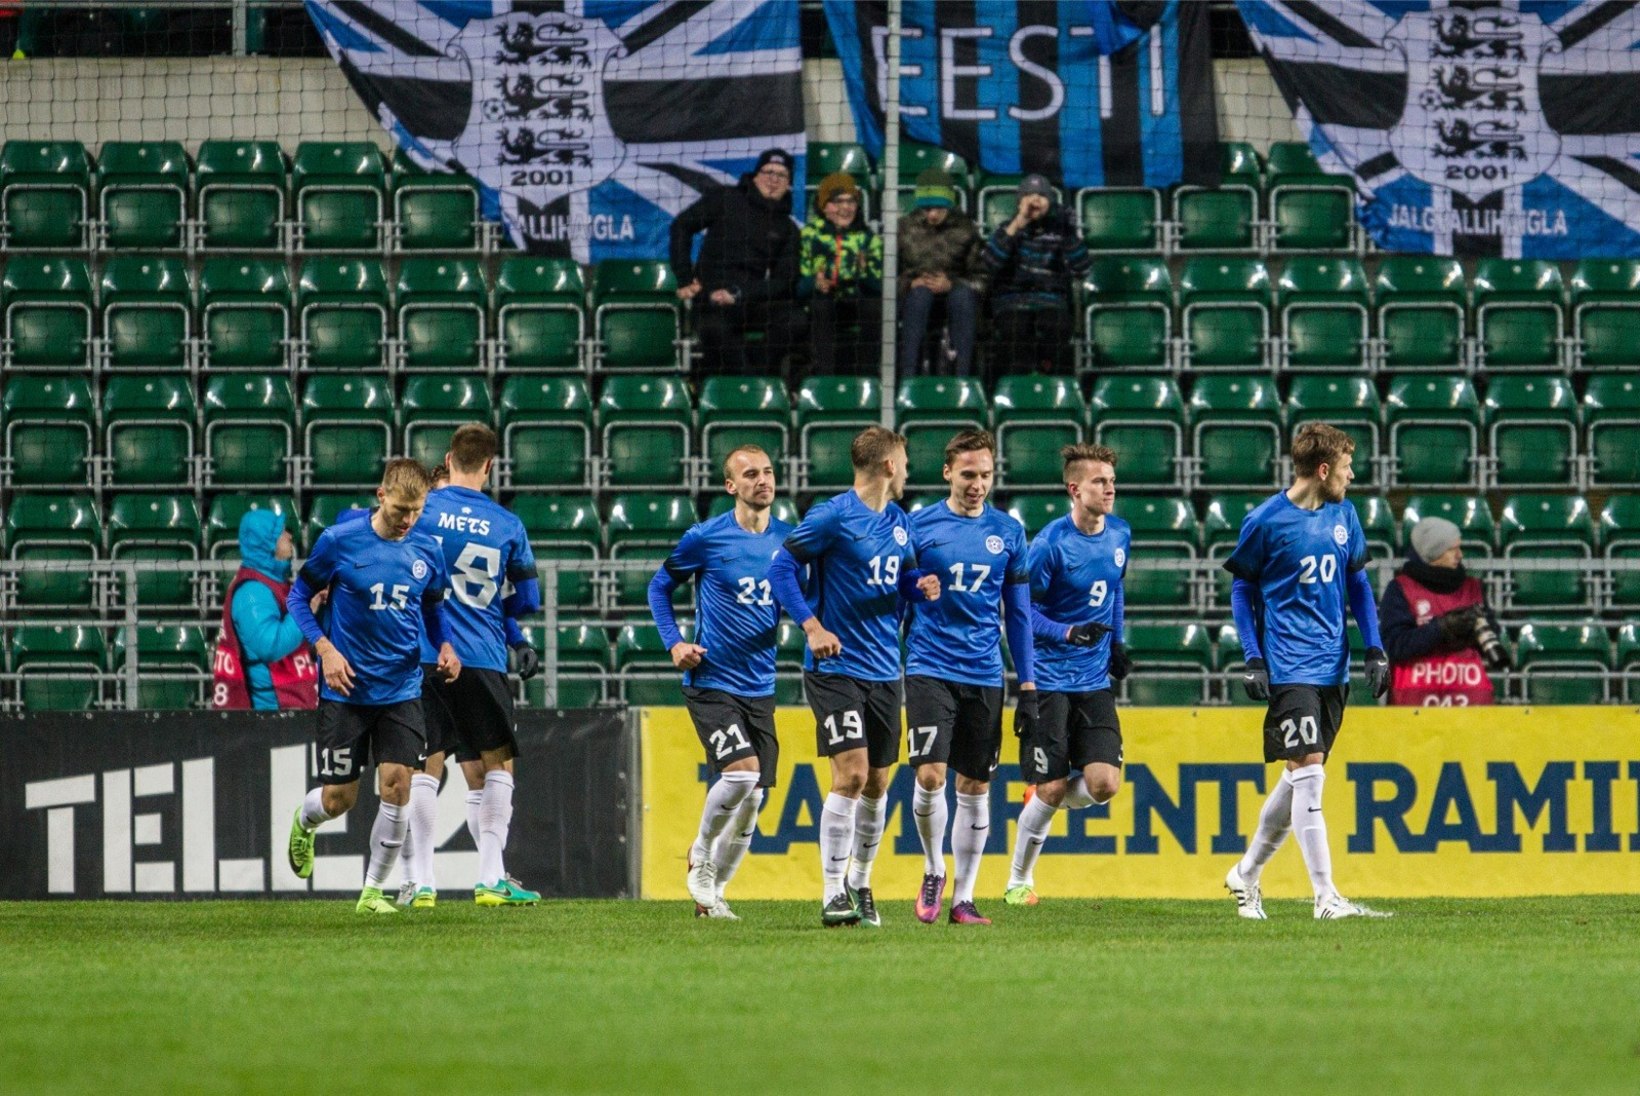 NII SEE JUHTUS | Sport 12.06: Eesti võidupõud sai läbi, Tänak naasis kodumaale